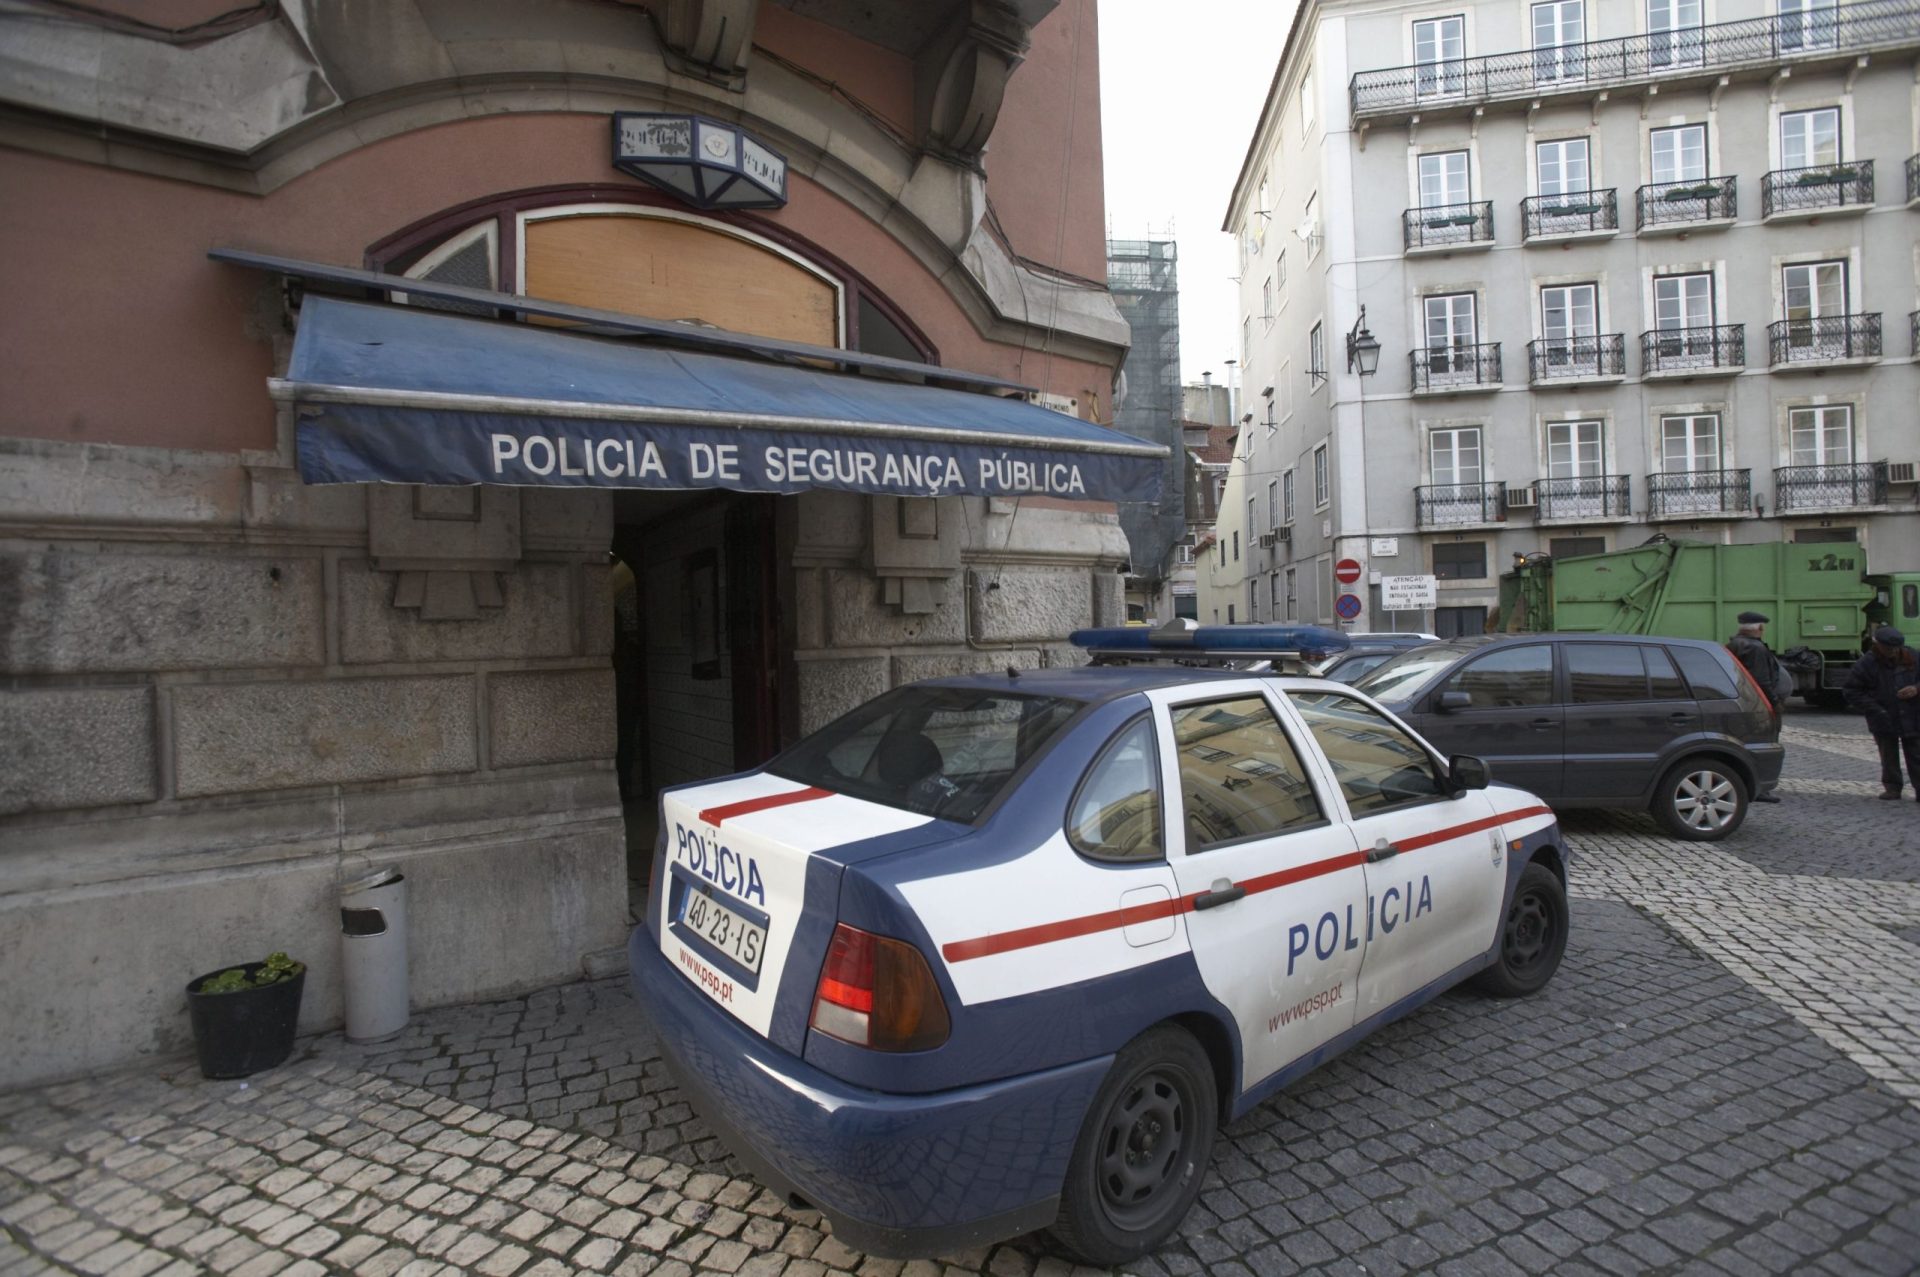 Seis detidos por desacatos em Lisboa